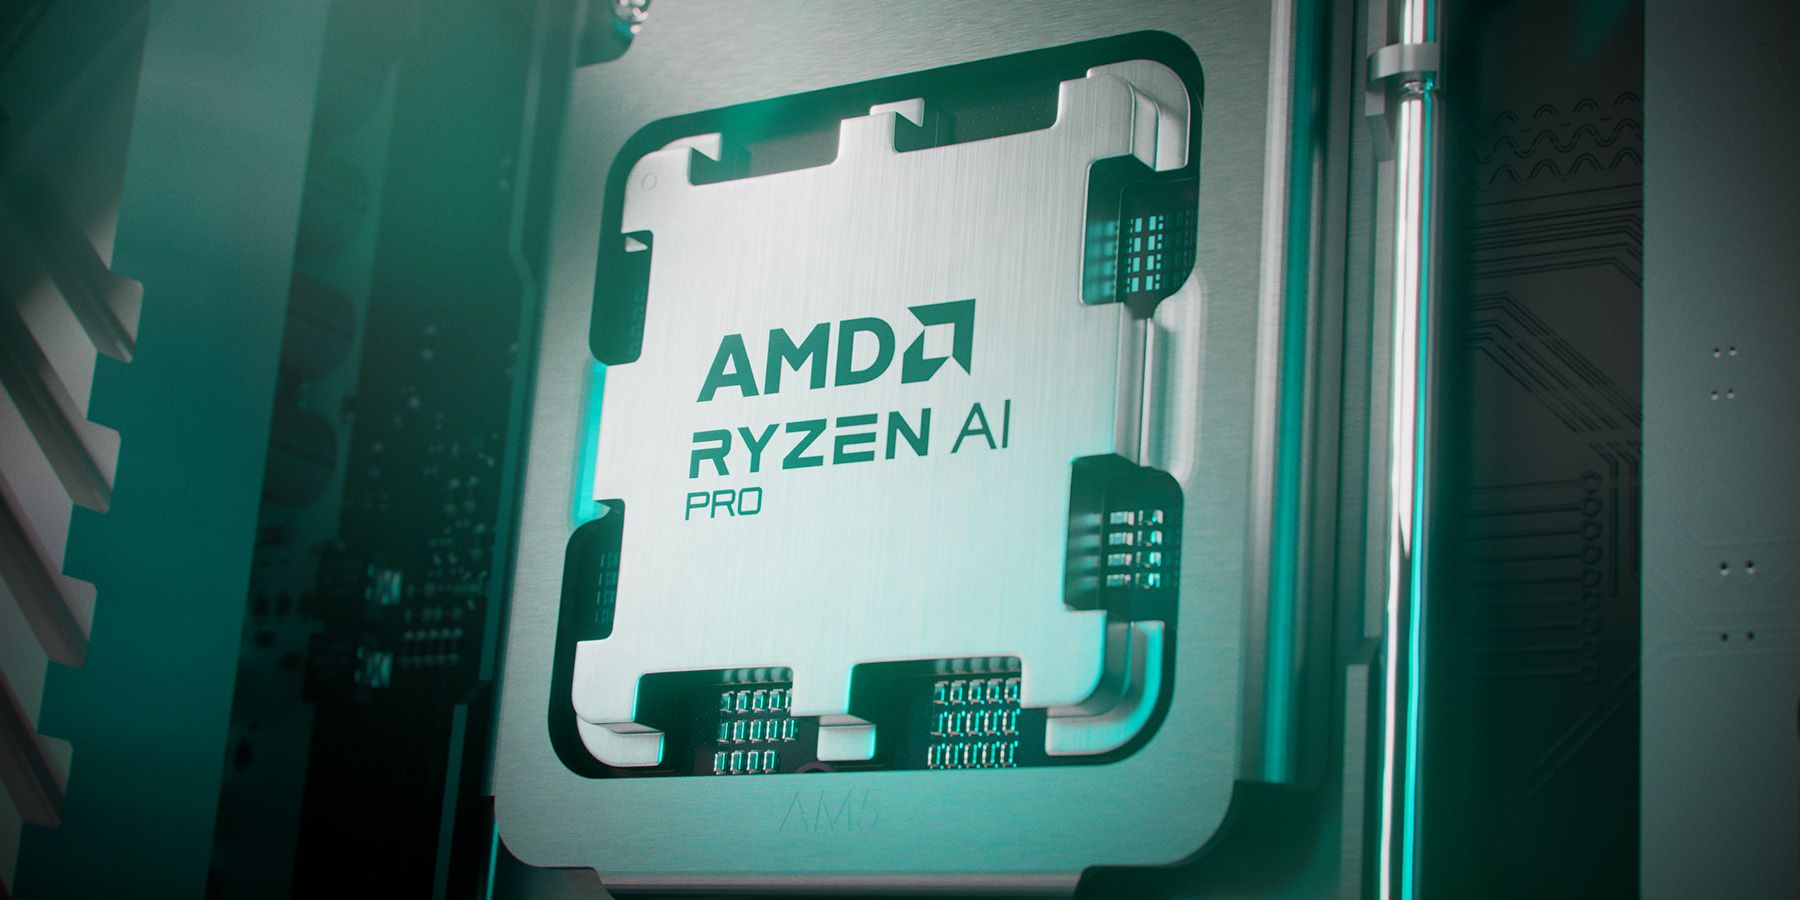 AMD Ryzen AI Pro chipset render 1